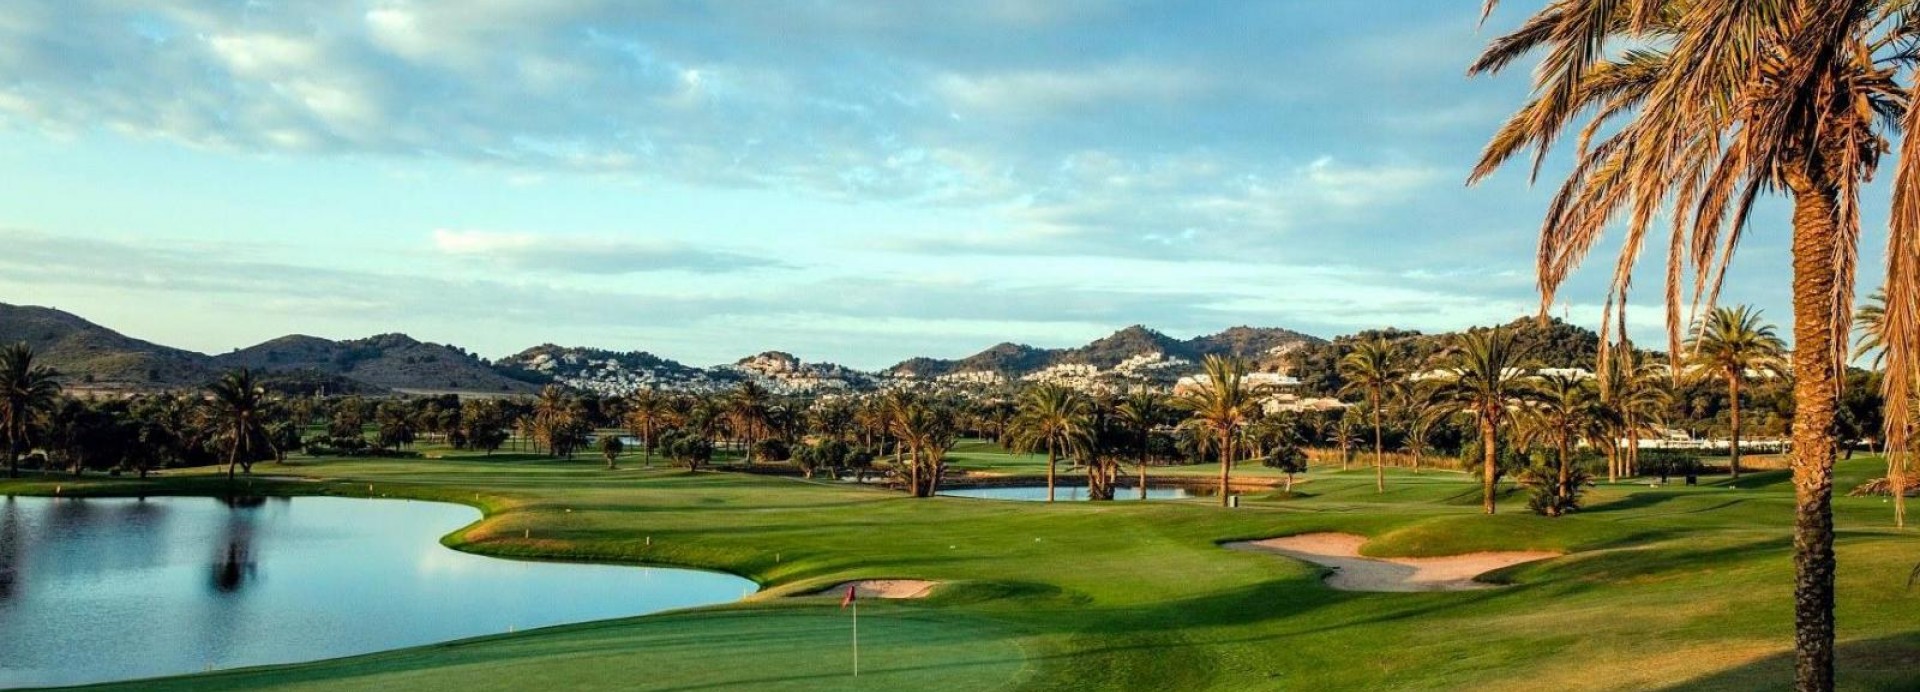 La Manga Golf Club - South  | Golfové zájezdy, golfová dovolená, luxusní golf